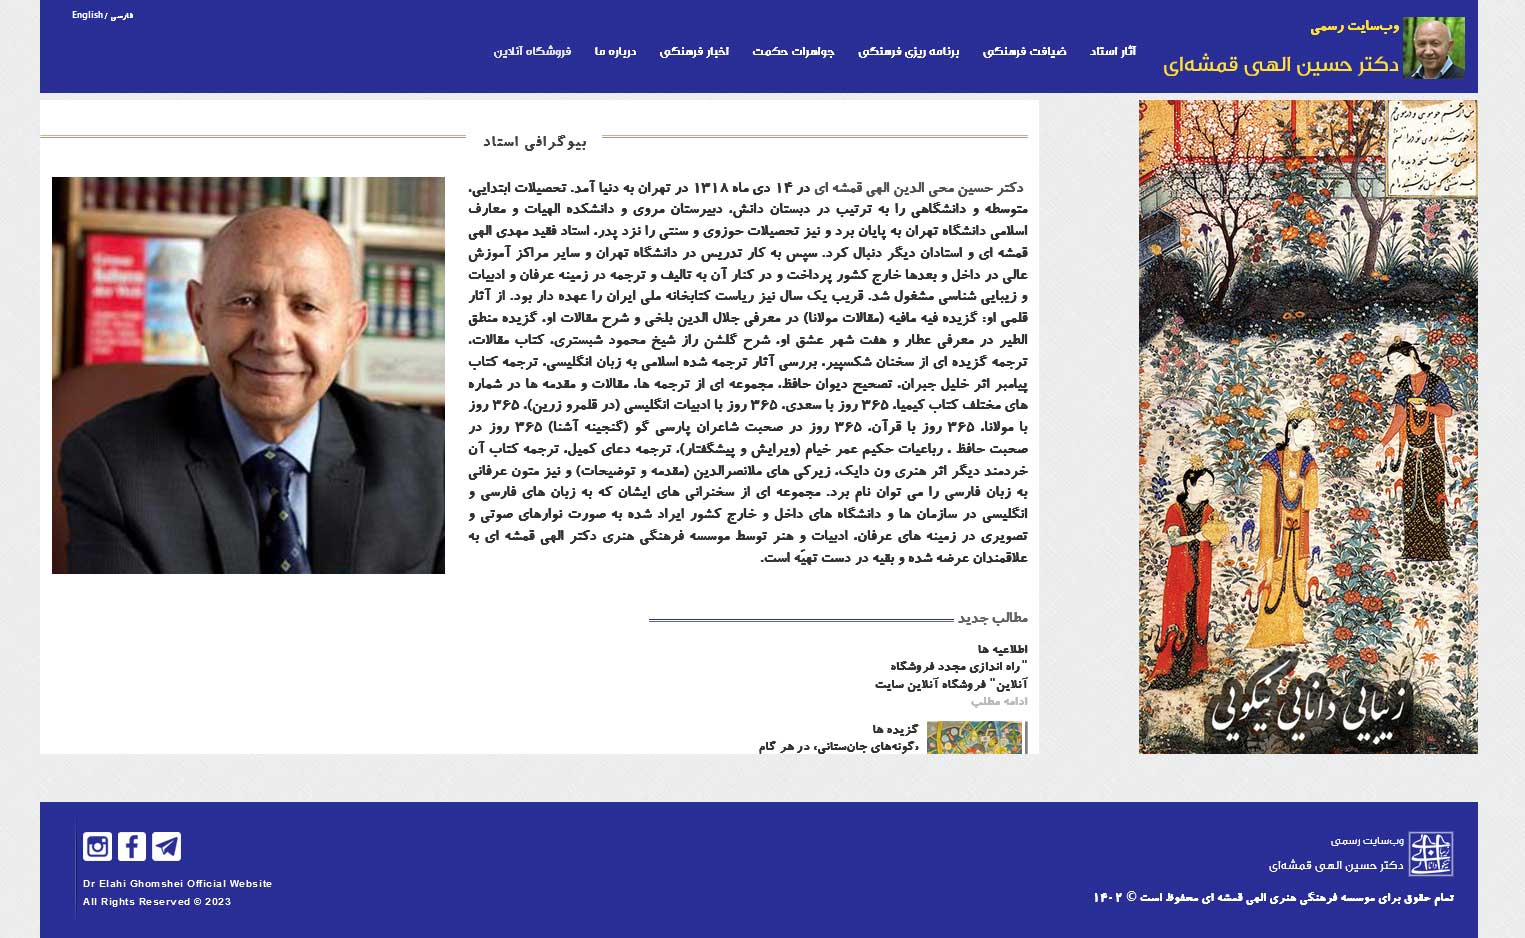 وب سایت شخصی دکتر حسین الهی قمشه ای